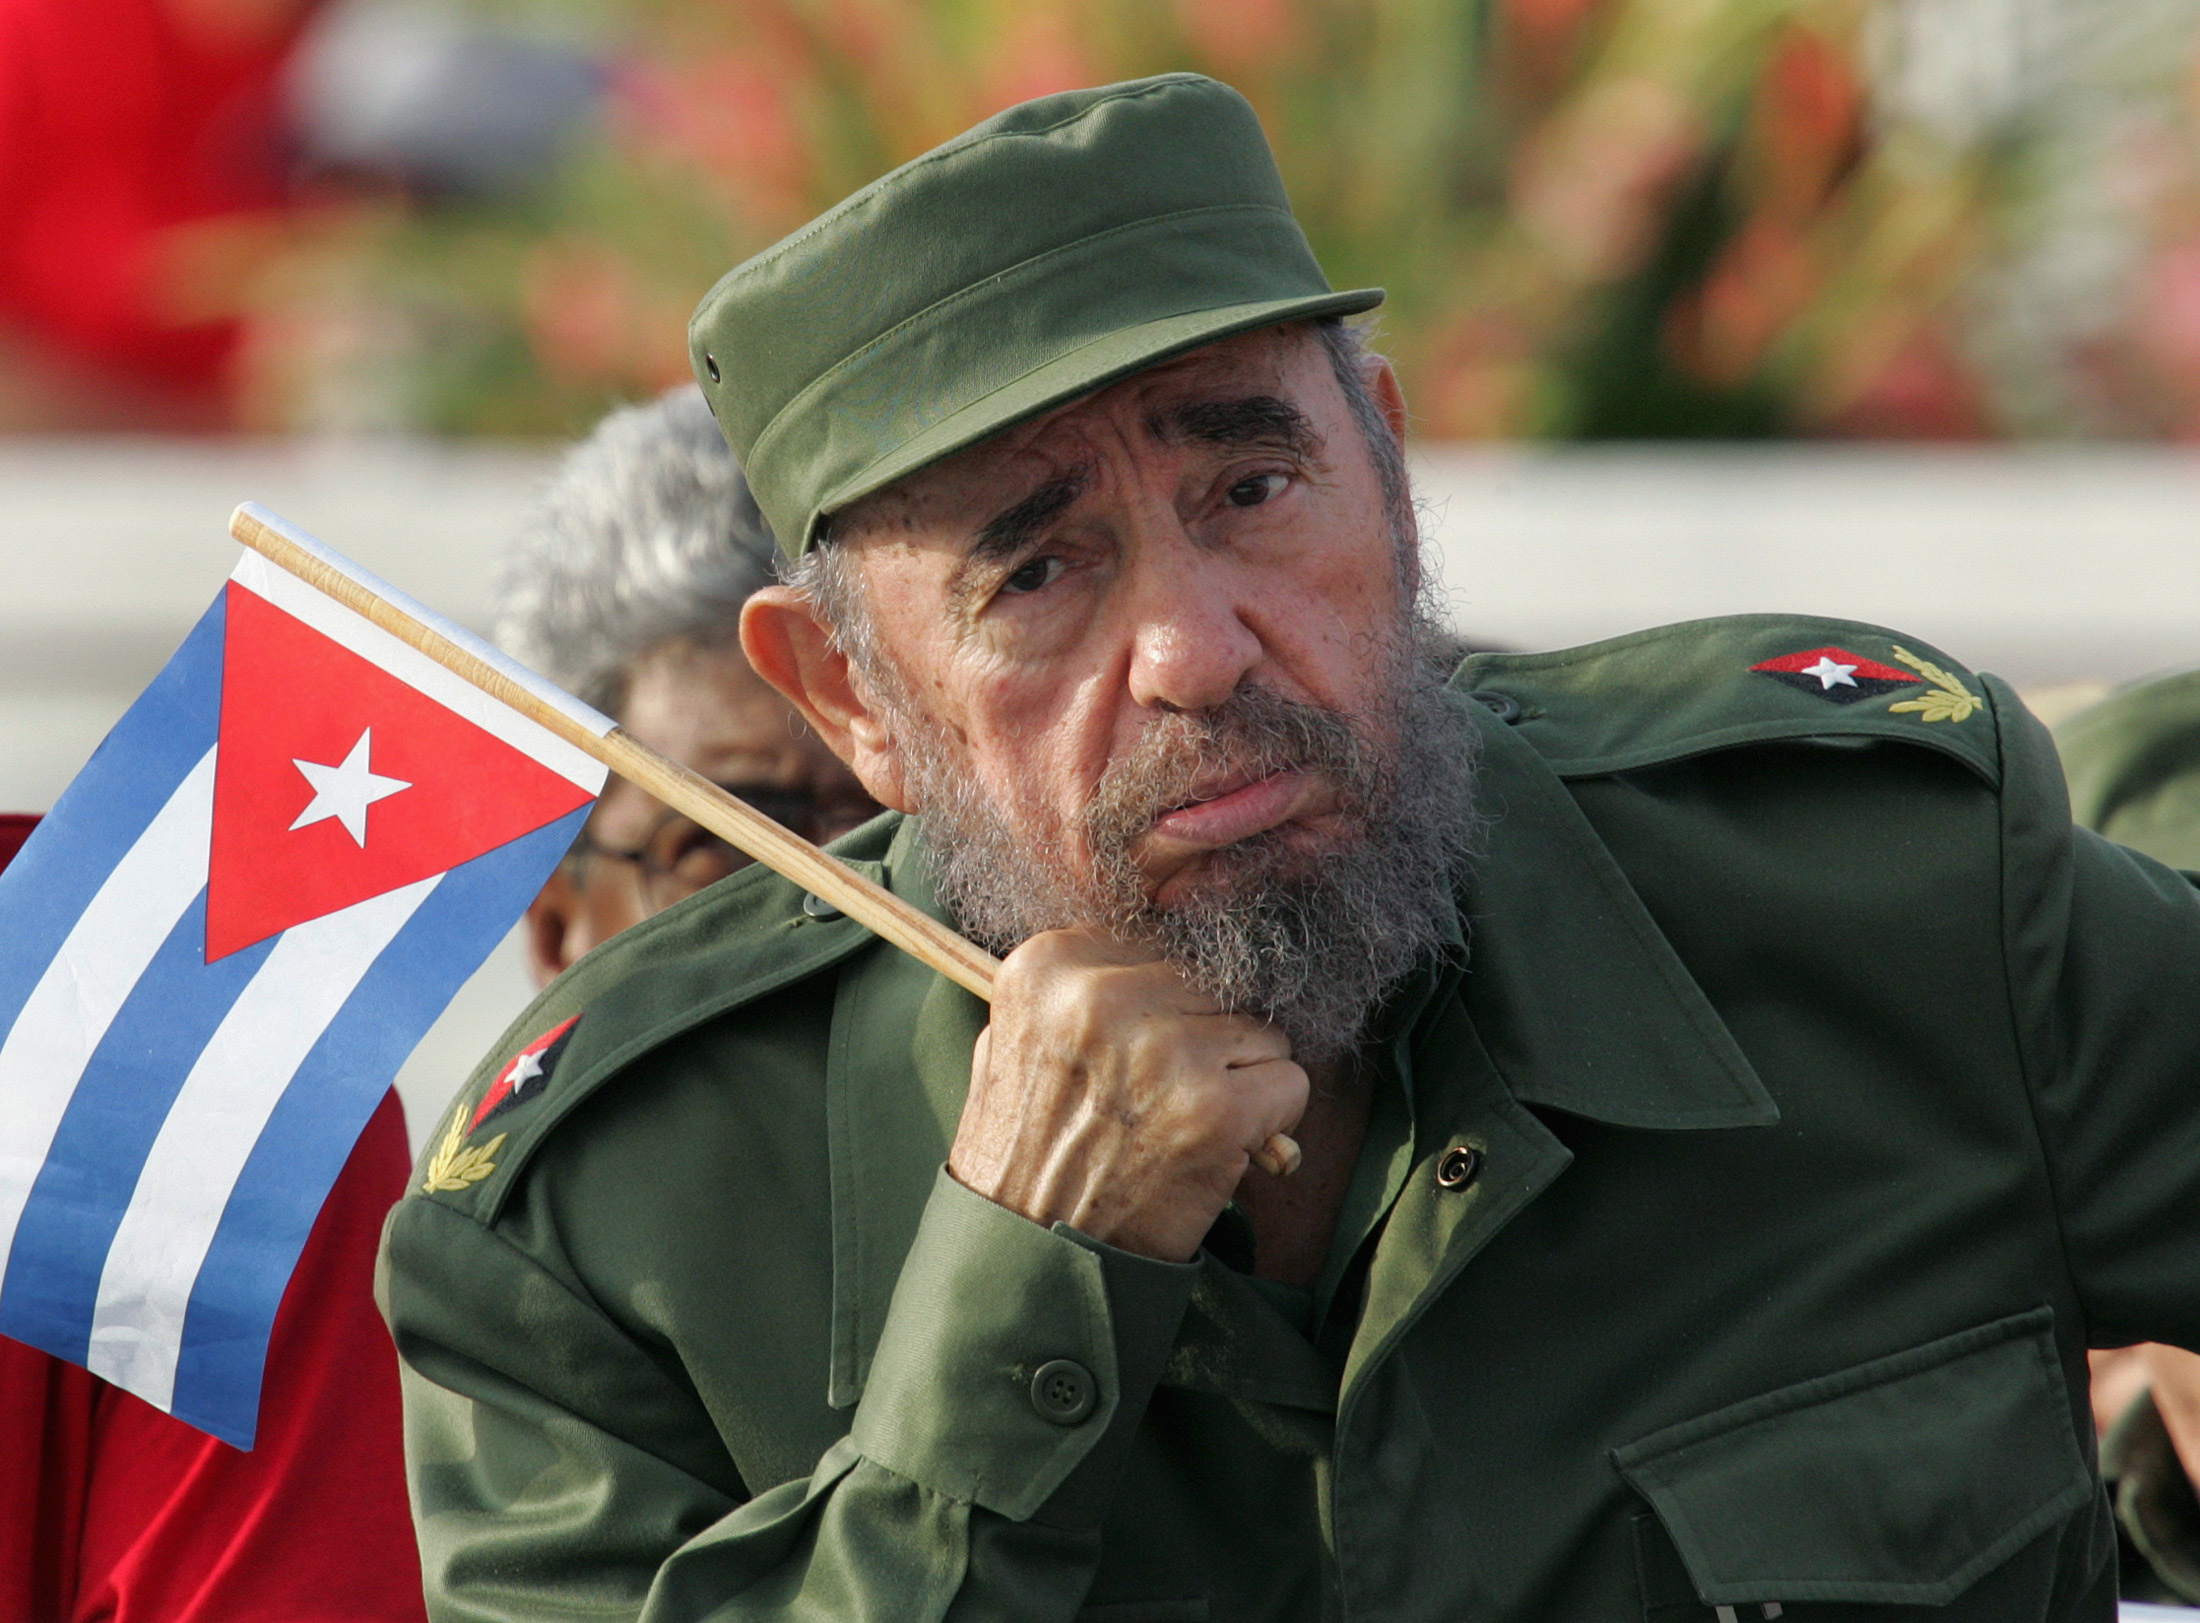 كوبا تمنع بناء تماثيل لزعيمها الراحل "فيدل كاسترو" أو اطلاق اسمه على أي شارع أومؤسسة